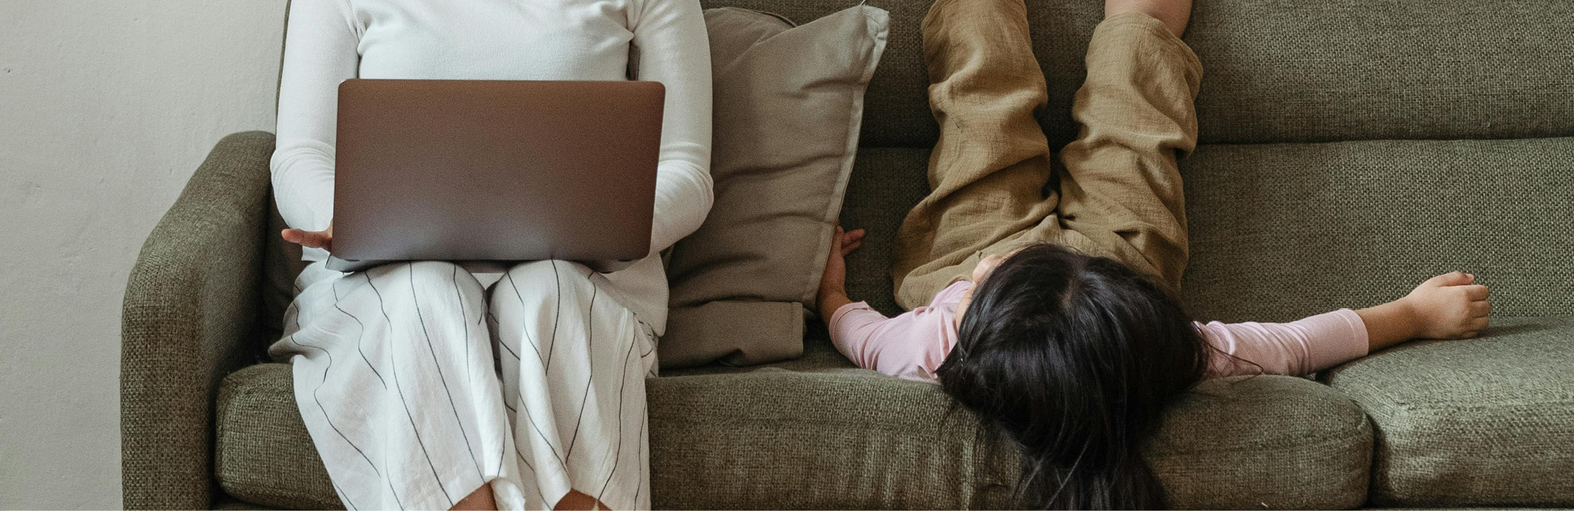 En mamma och barn sitter i en soffa, mamman har en dator i knät.